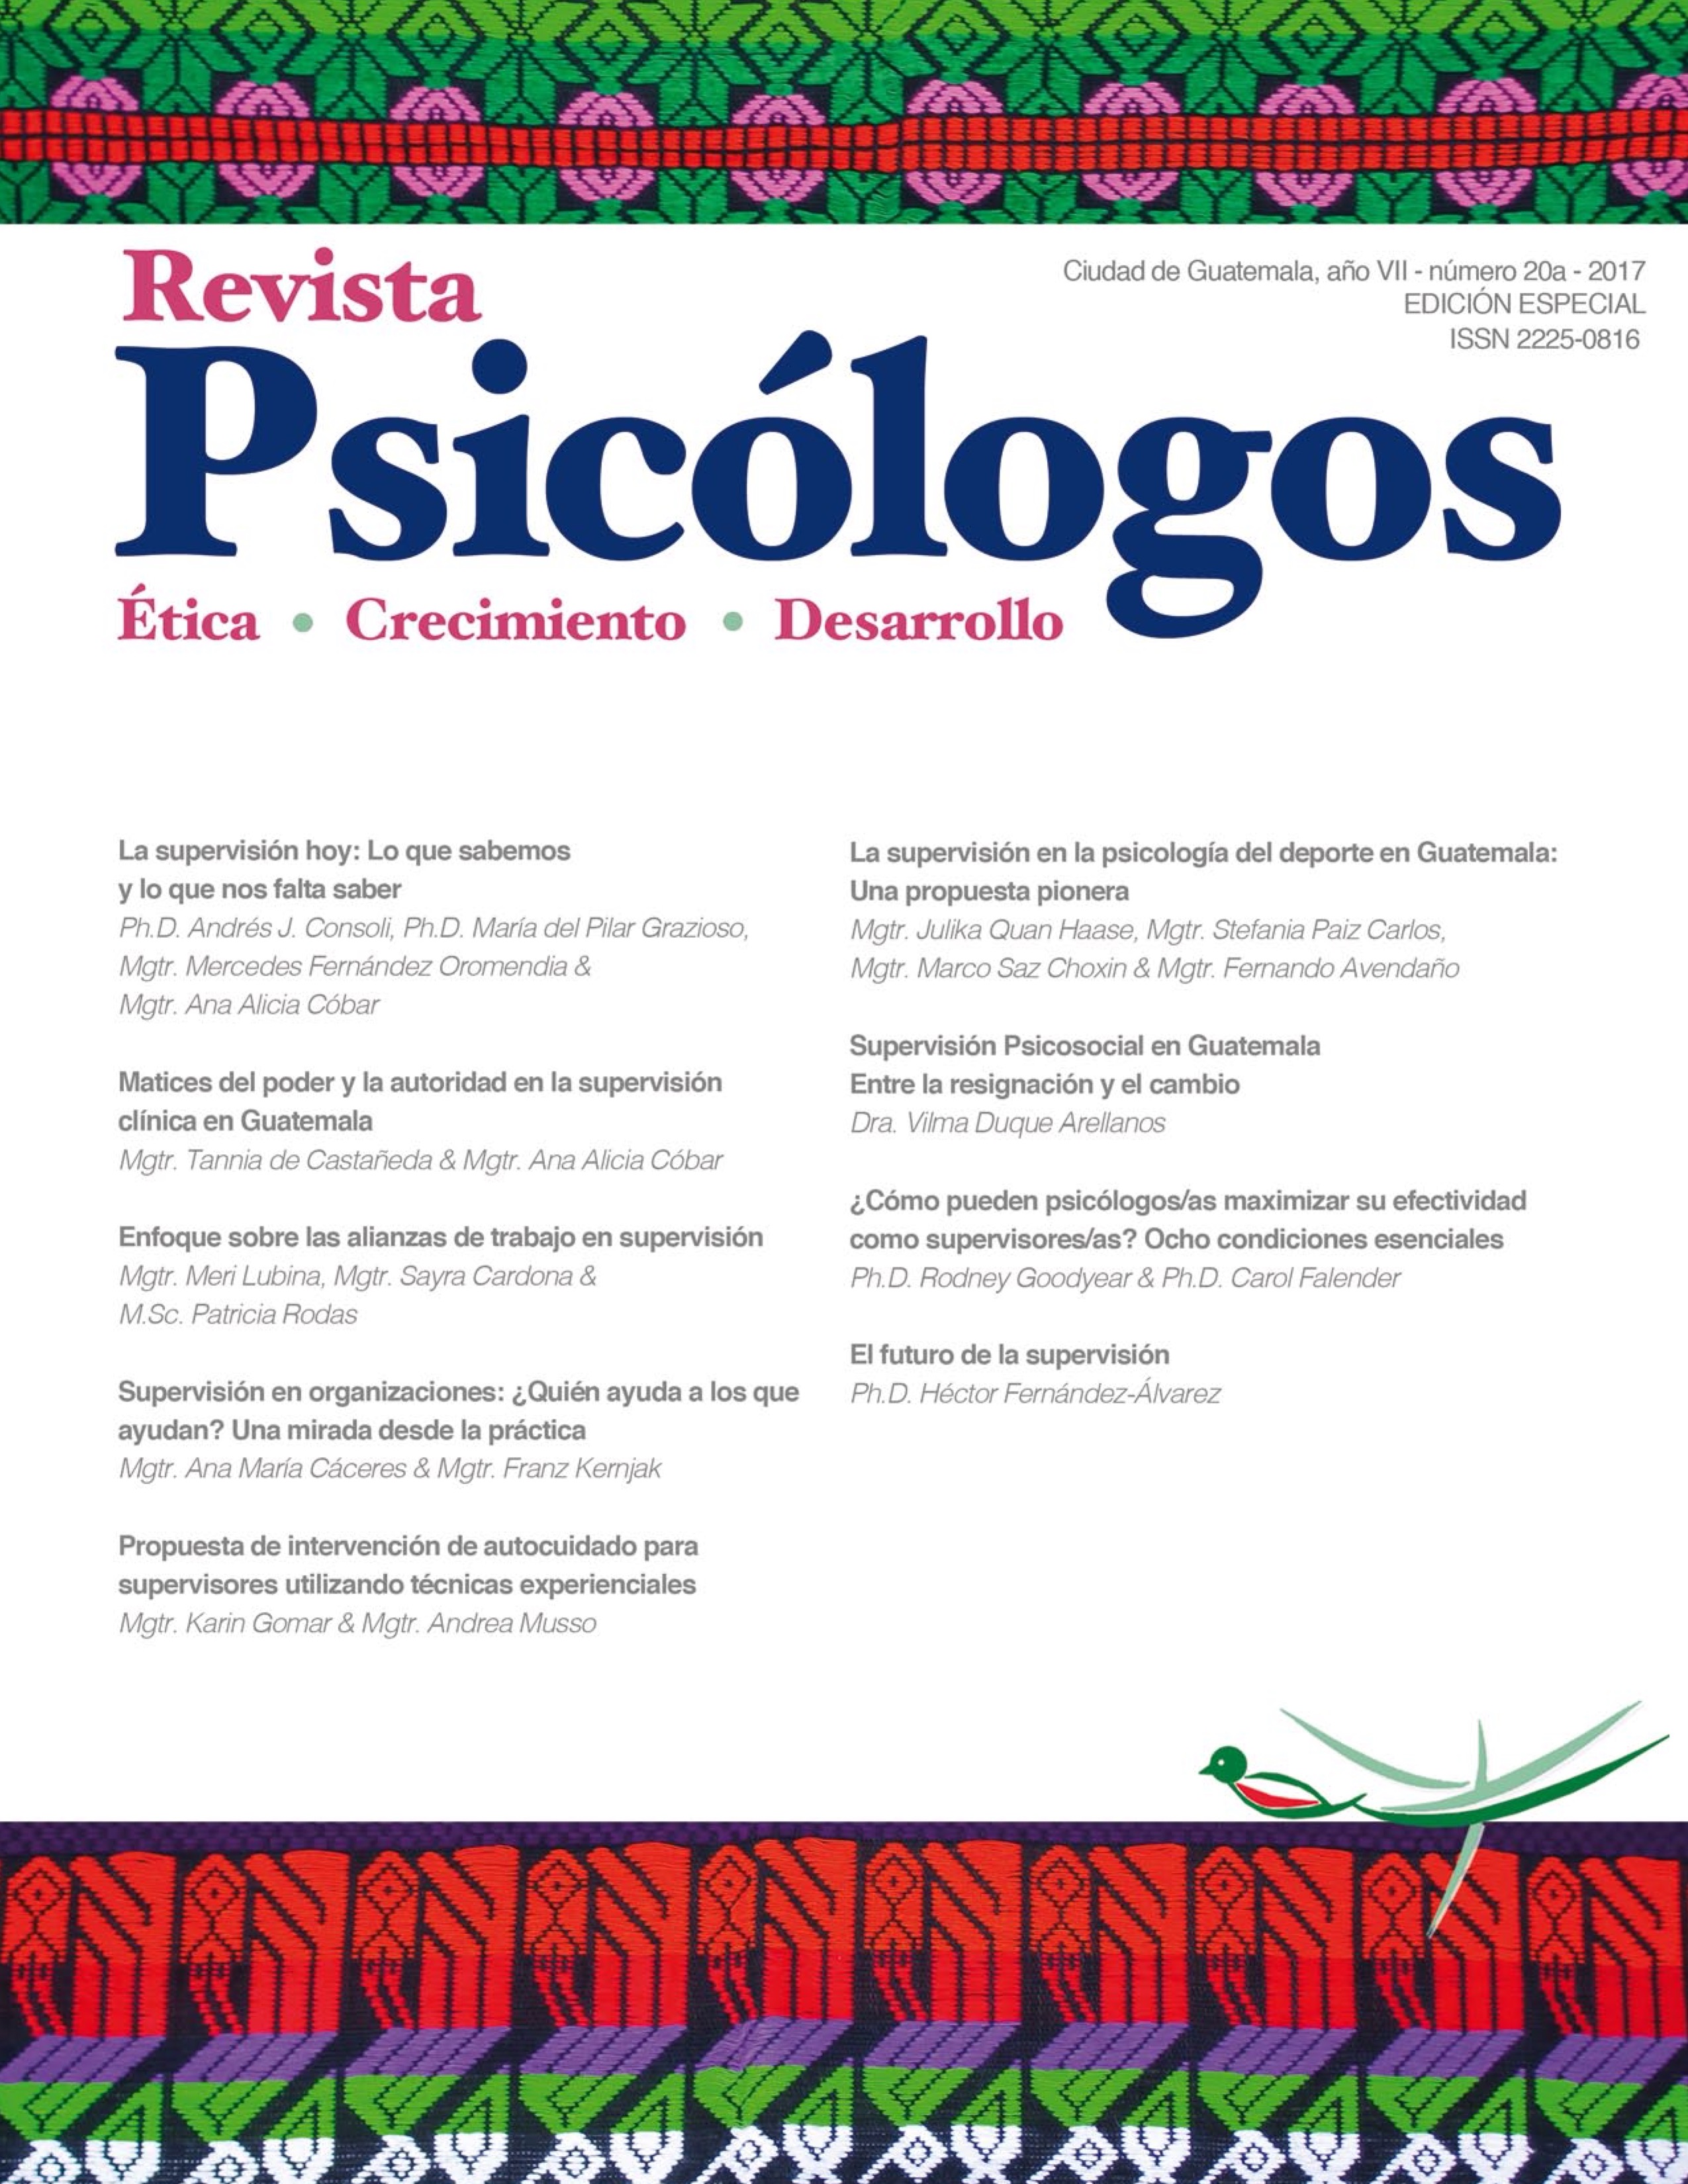 					Ver Vol. 7 Núm. 20a (2017): Revista Psicólogos No. 20a
				